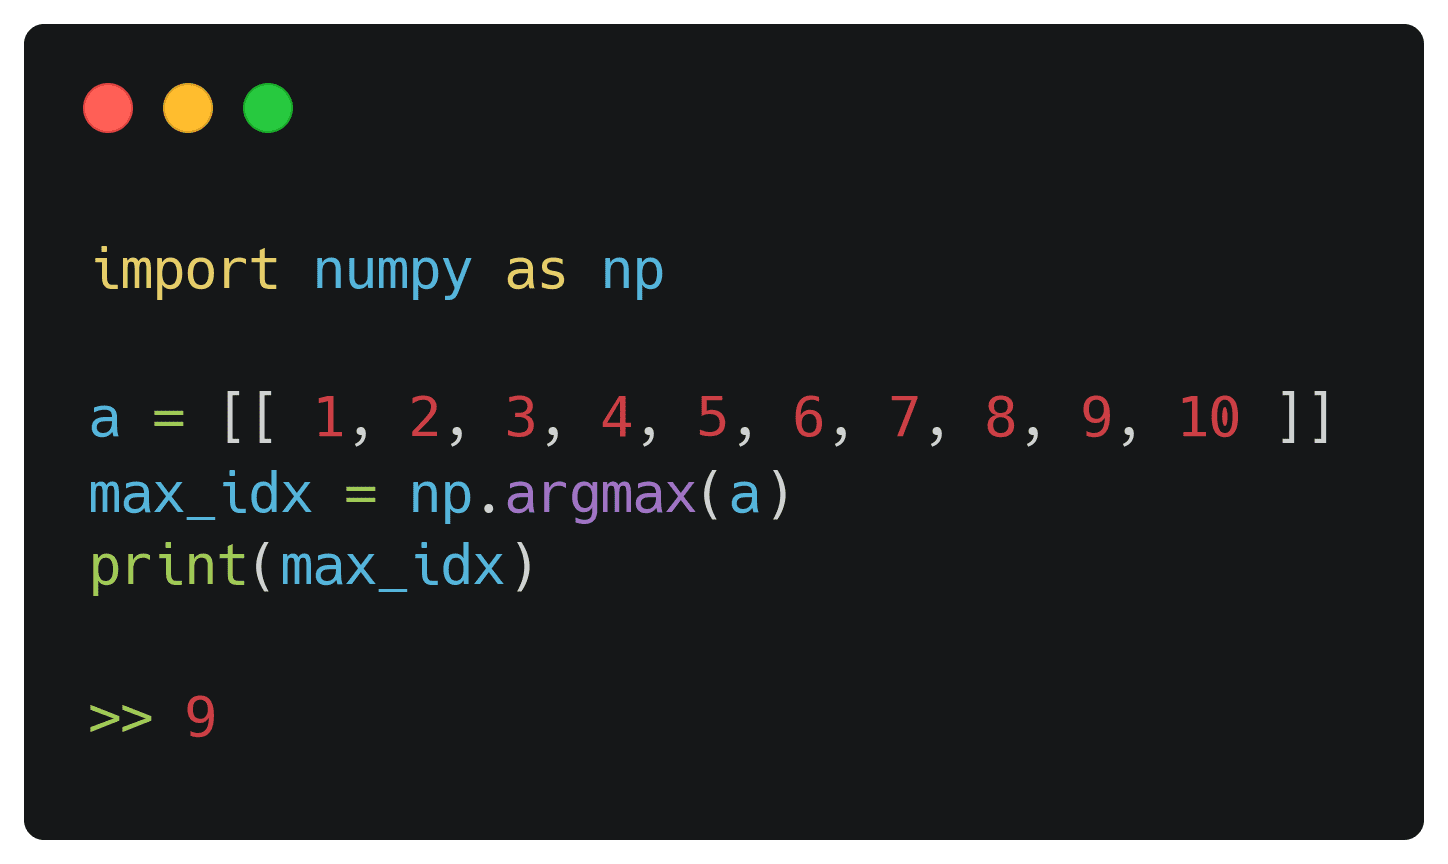 Using Numpy's argmax()